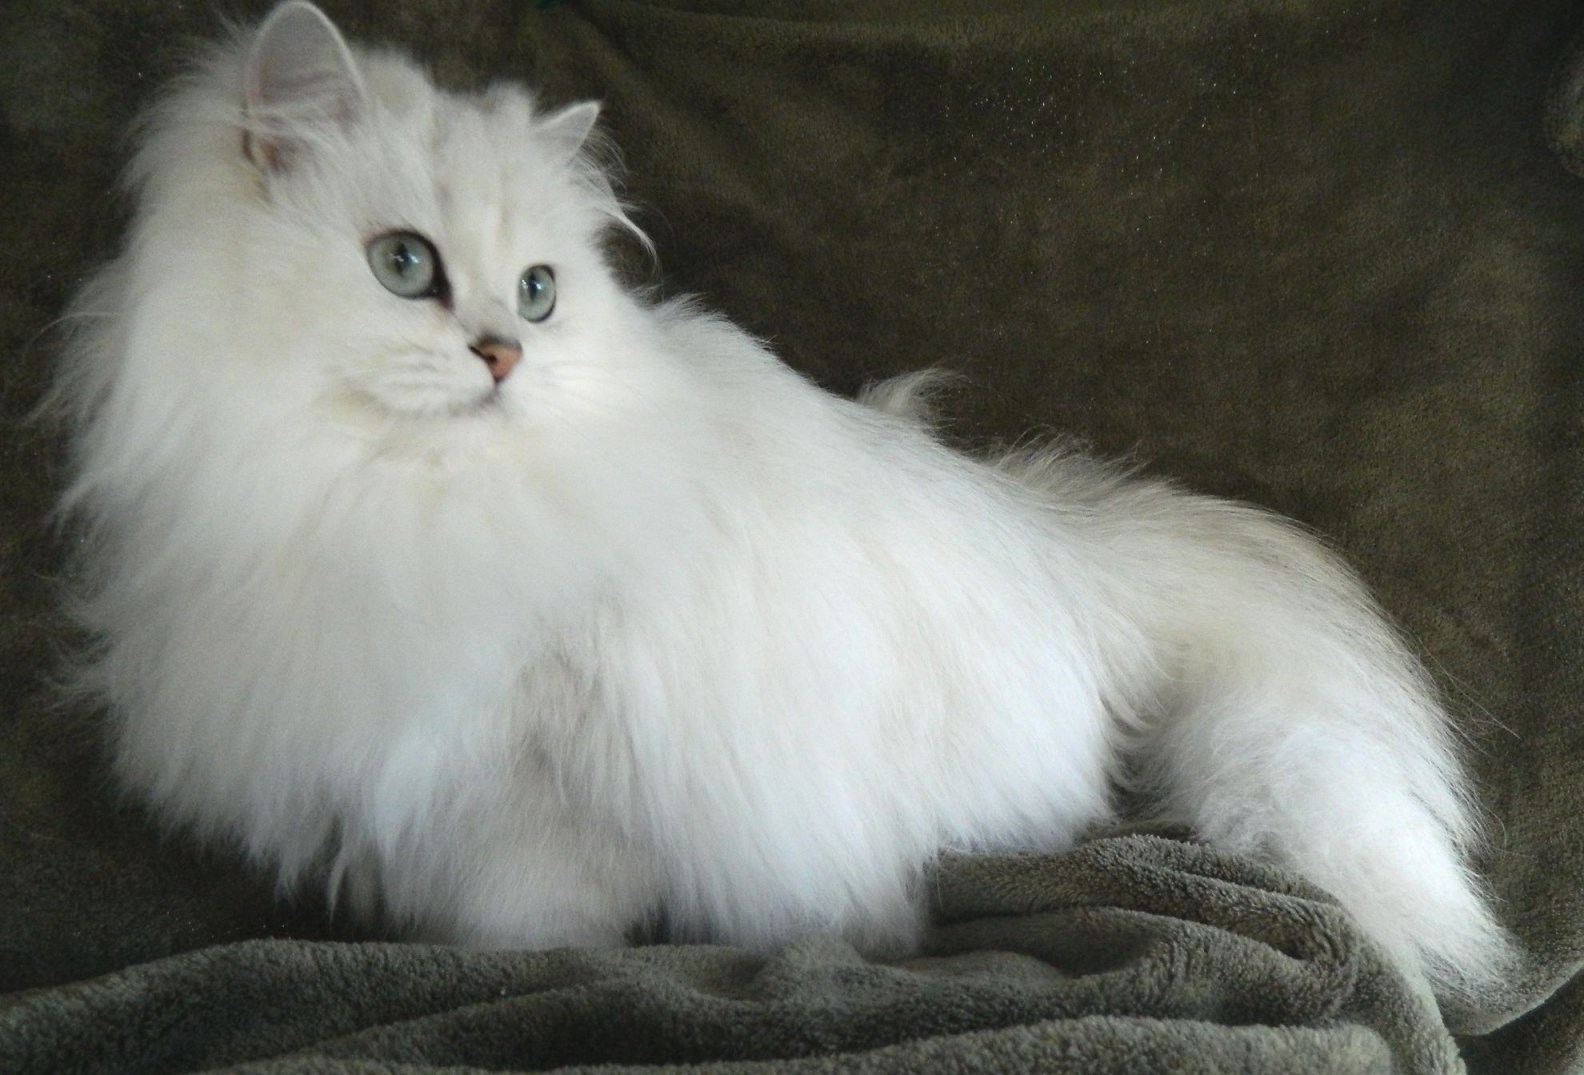 Обладающий длинной шерстью. Бурмилла длинношерстная белая. Хайлендер британский длинношерстный. Британская длинношёрстная кошка. Бурмилла длинношерстная (Burmilla longhair).